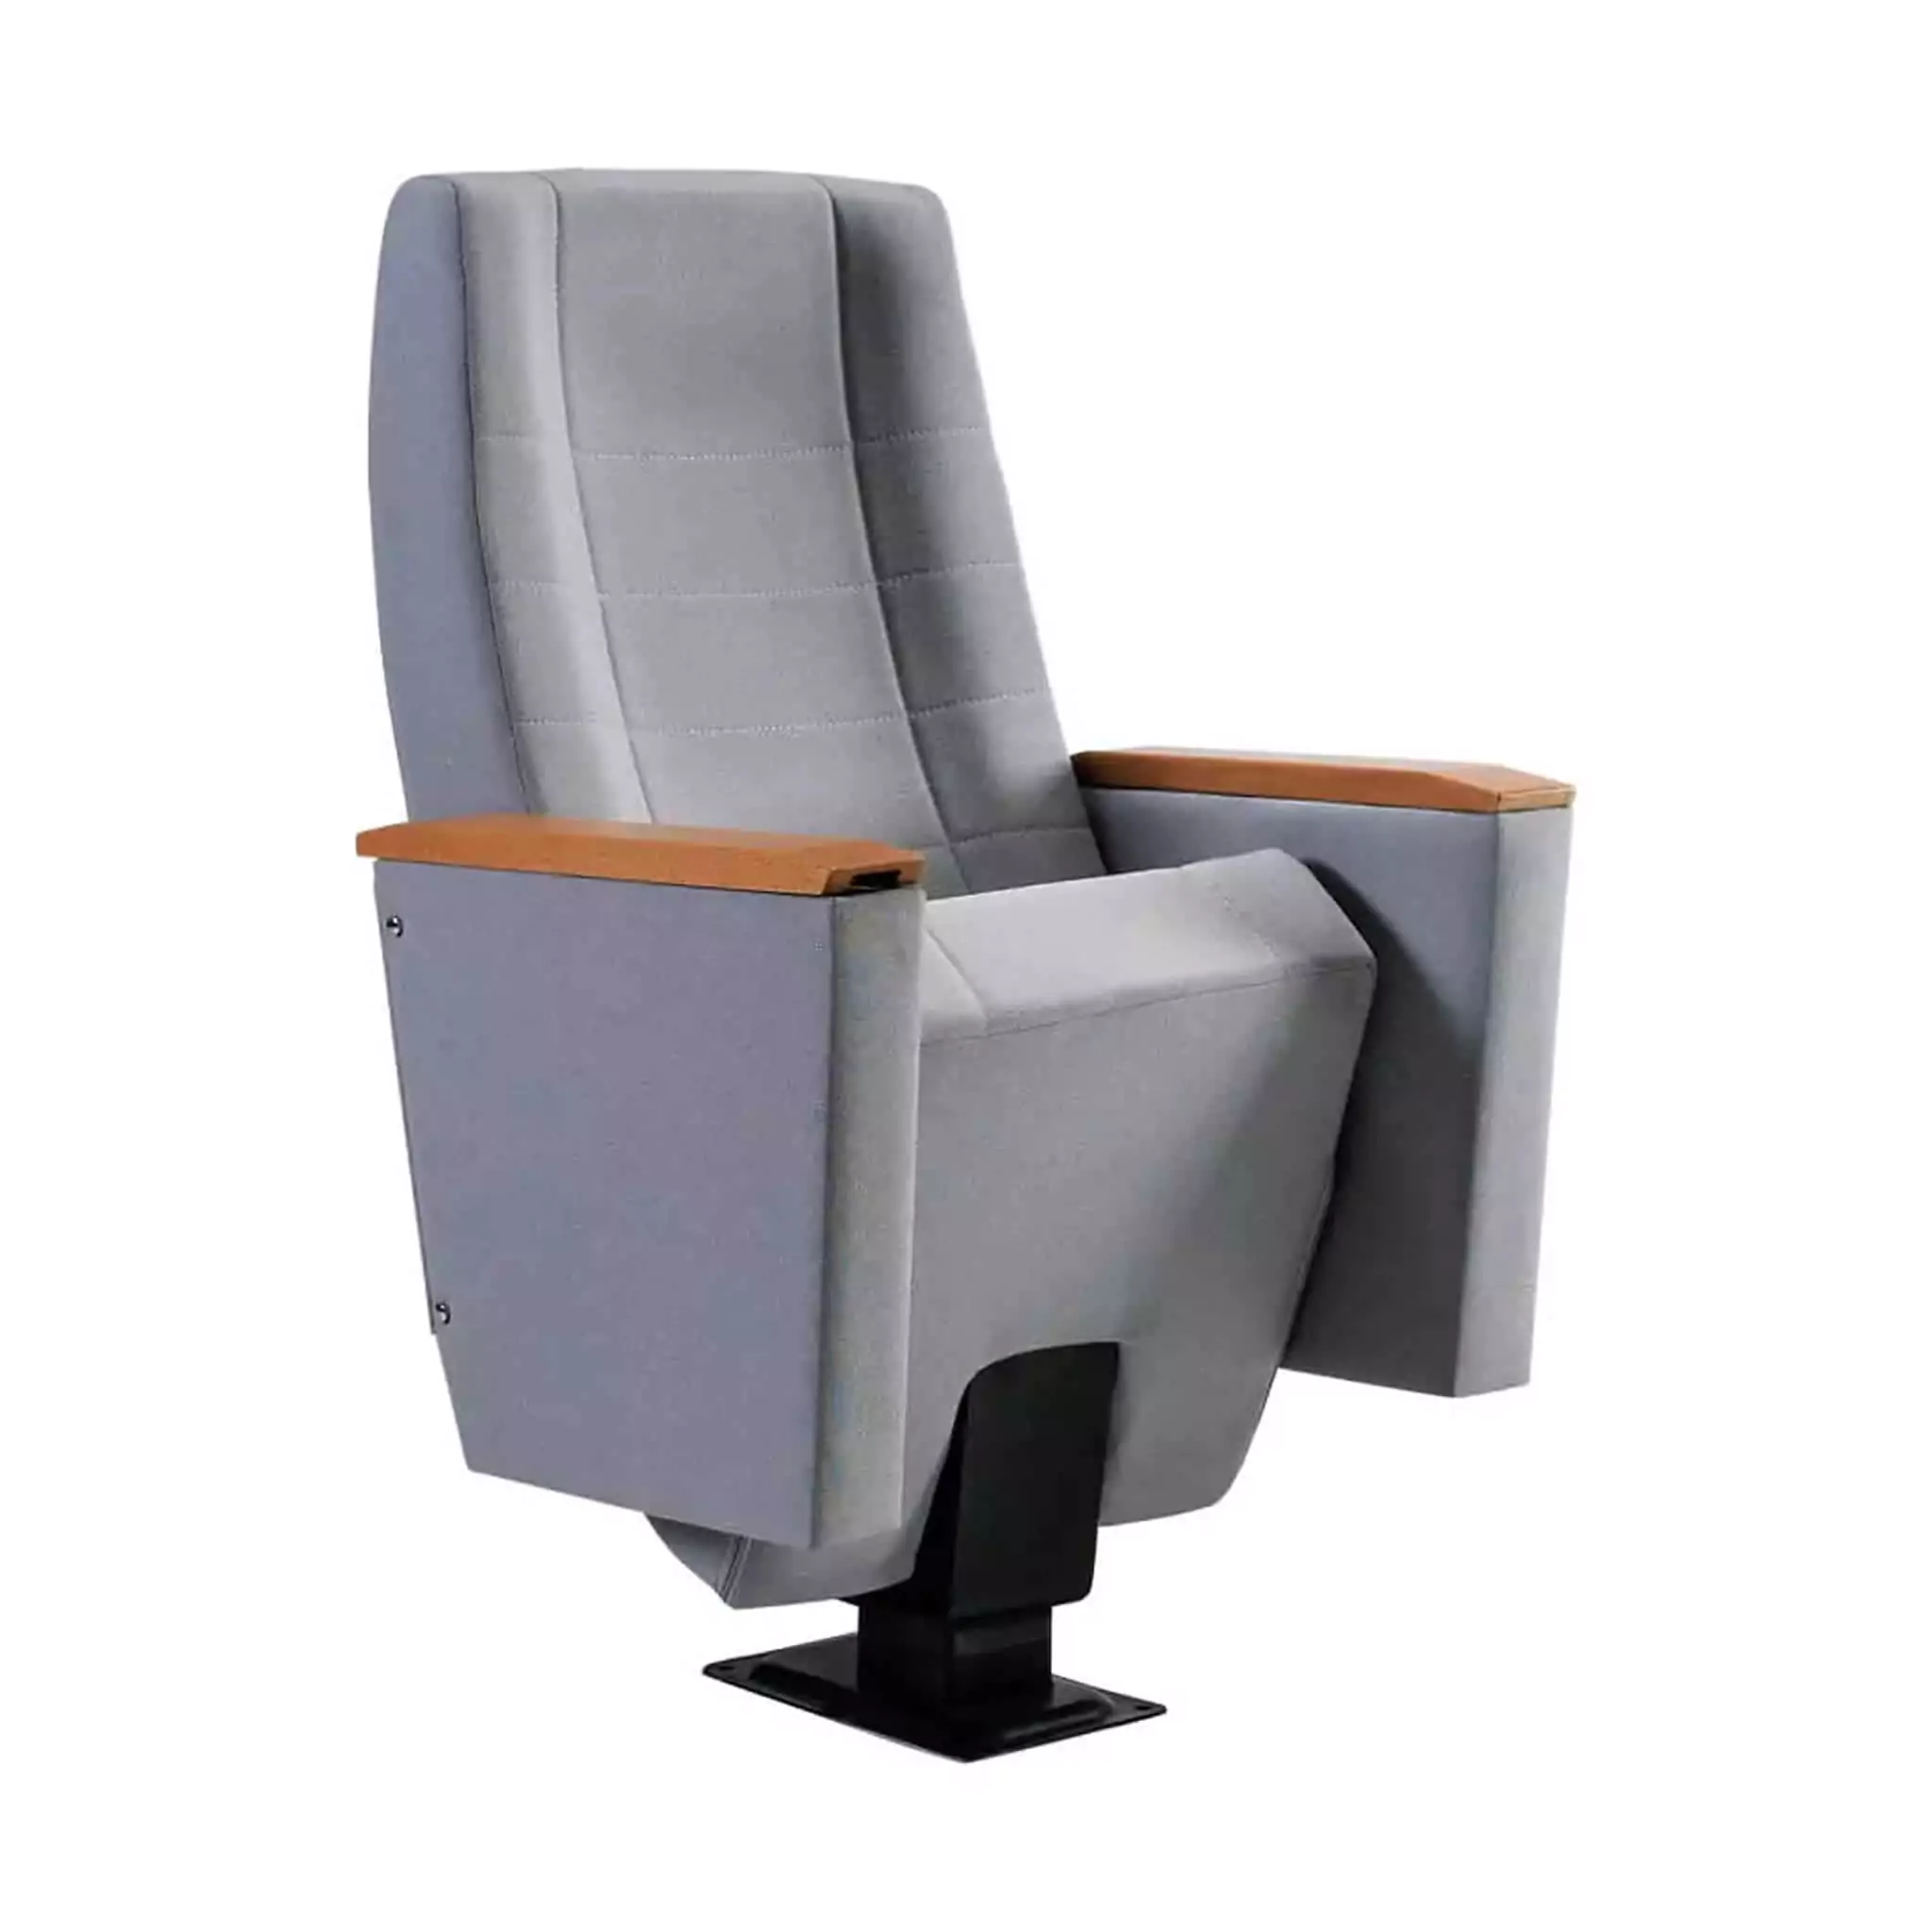 Seat Model: AQUAMARINE